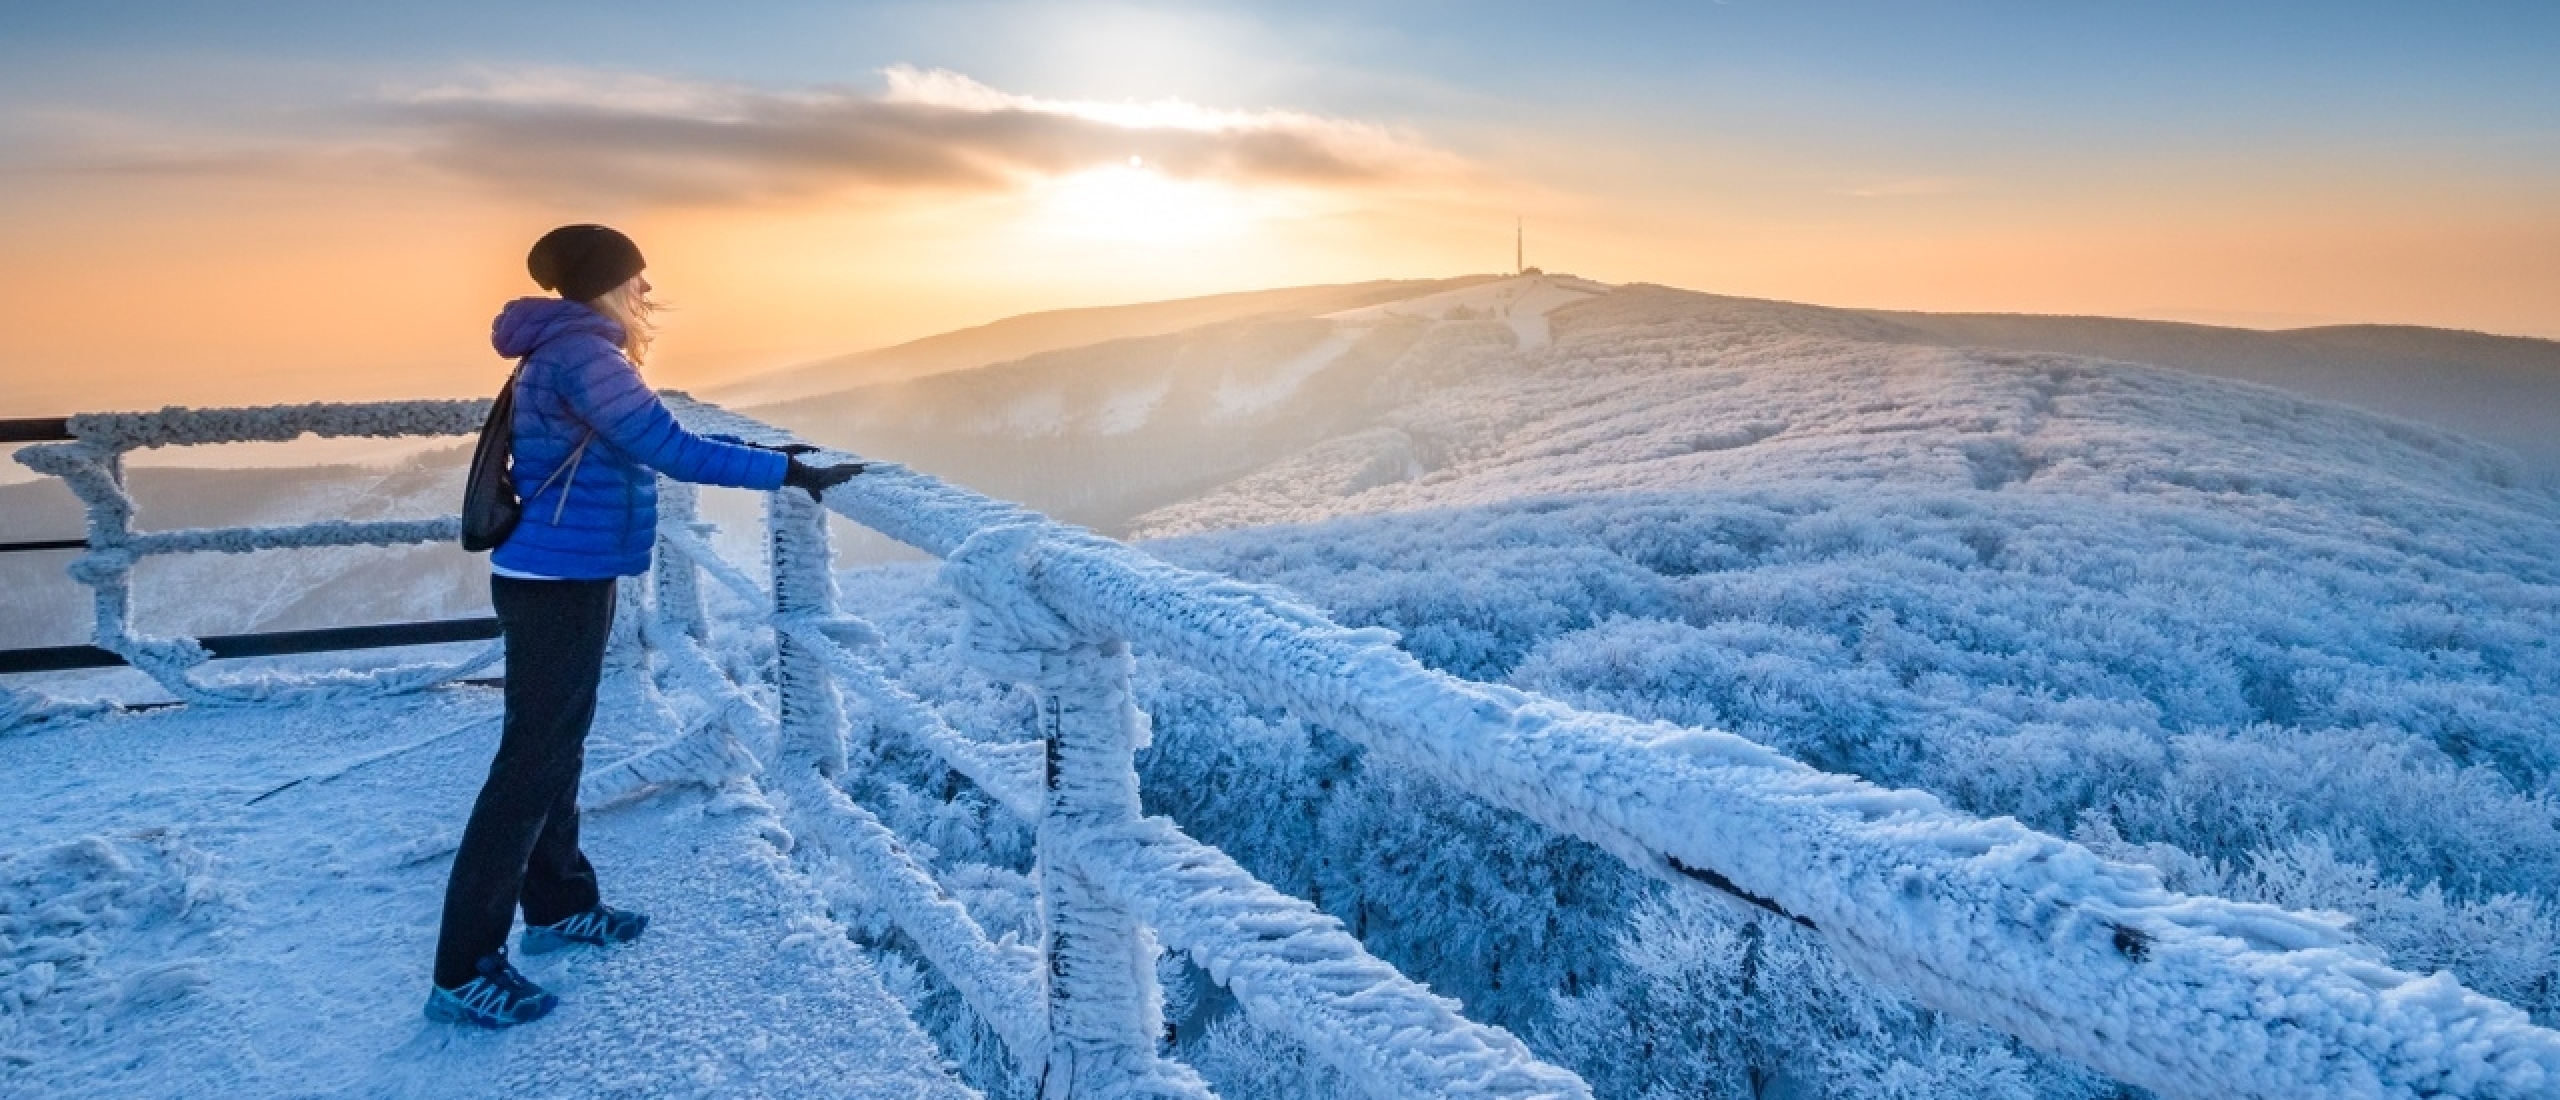 Winterse tips om de andere kant van de Tsjechische skigebieden te ontdekken